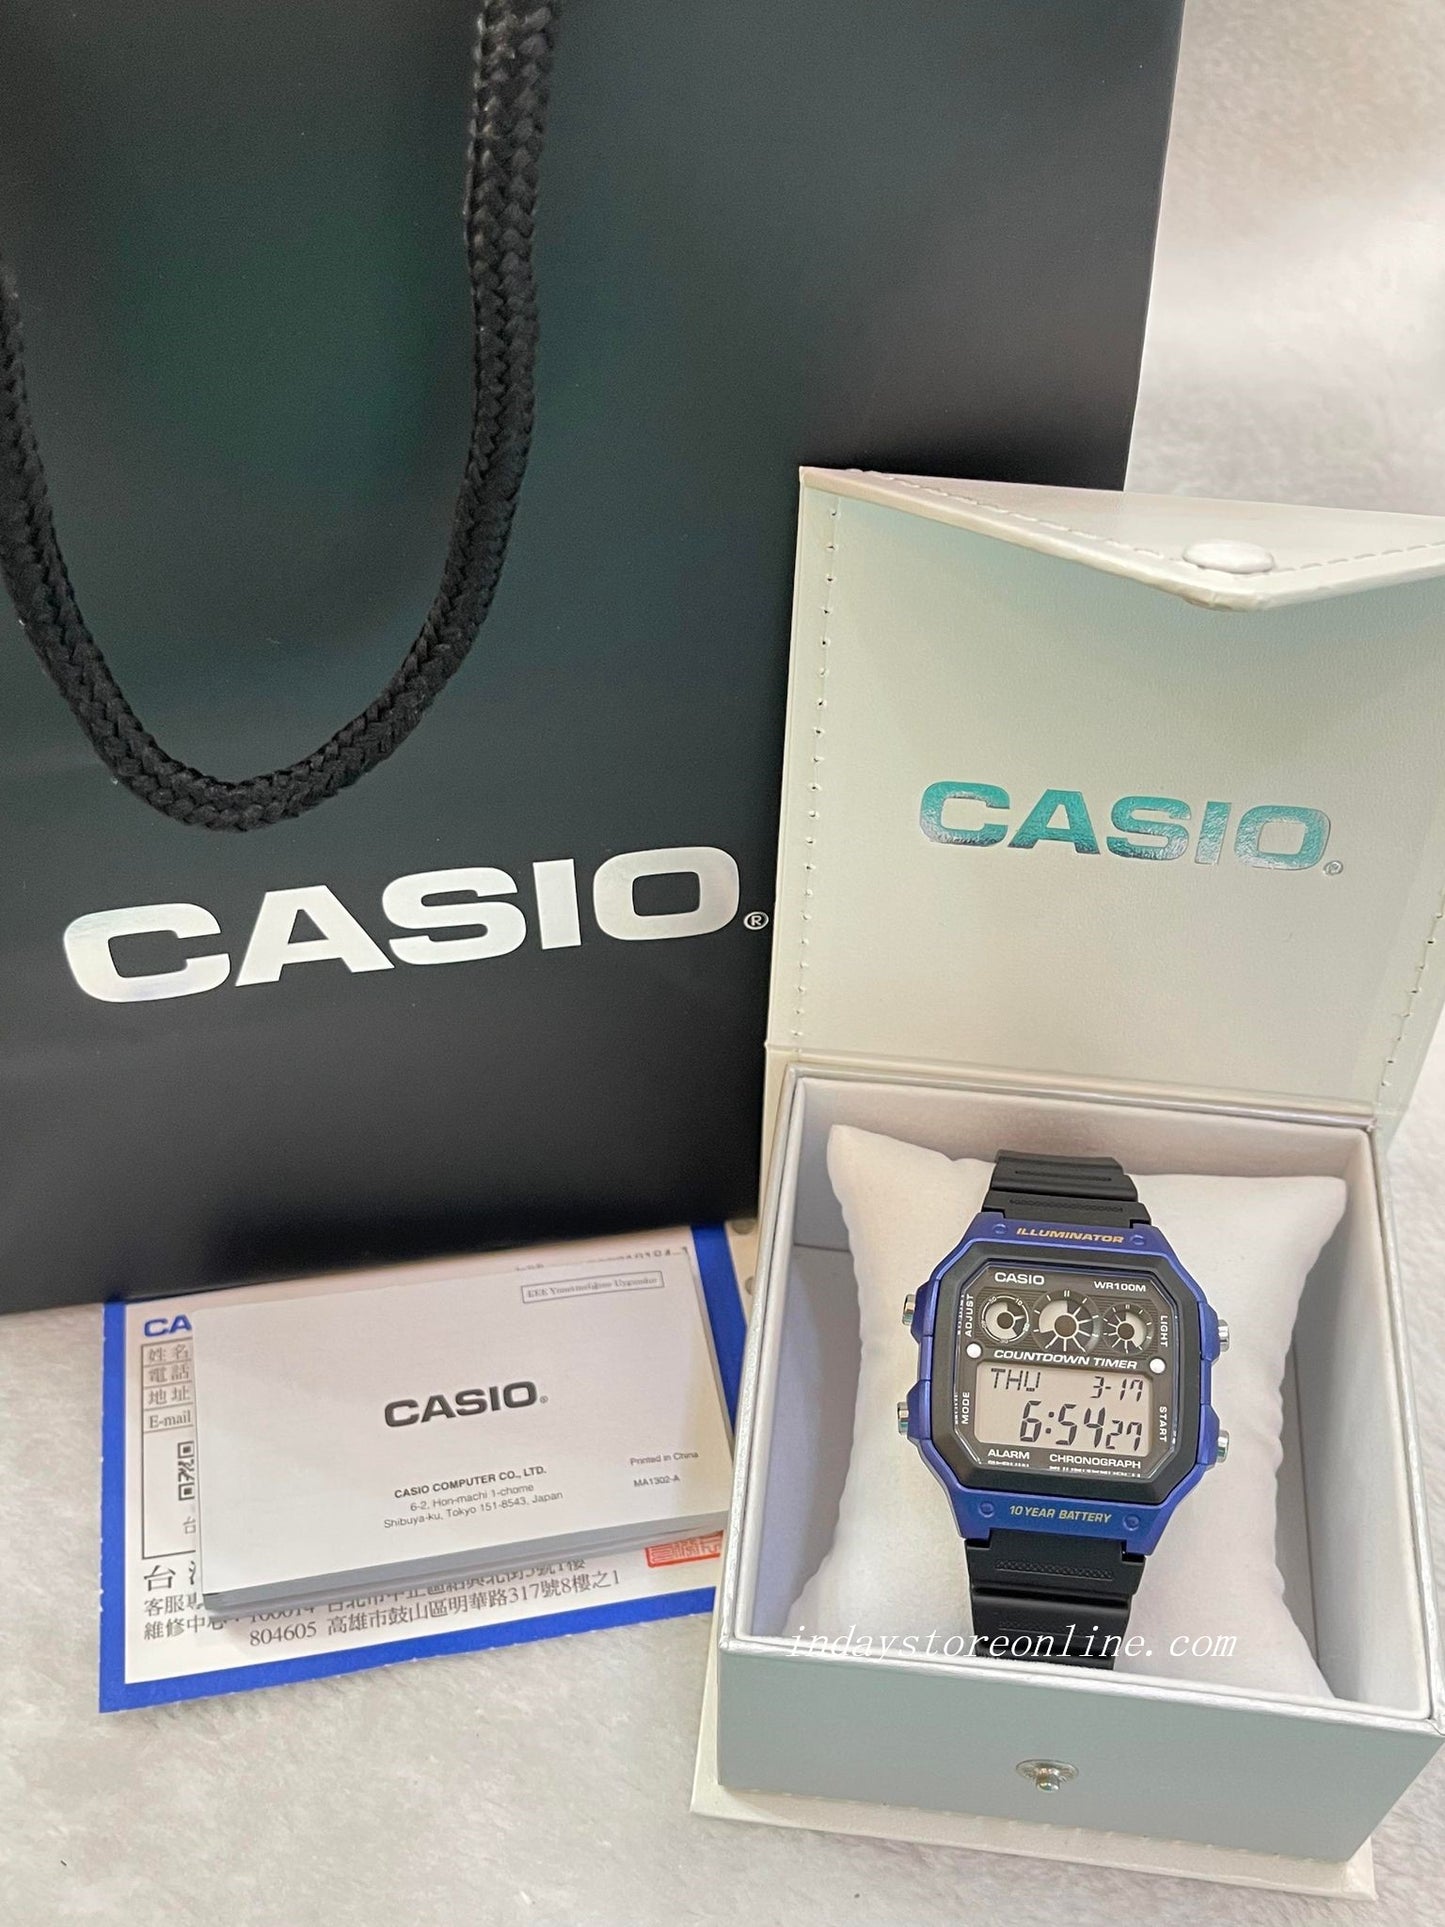 Casio Digital Men's Watch AE-1300WH-2A